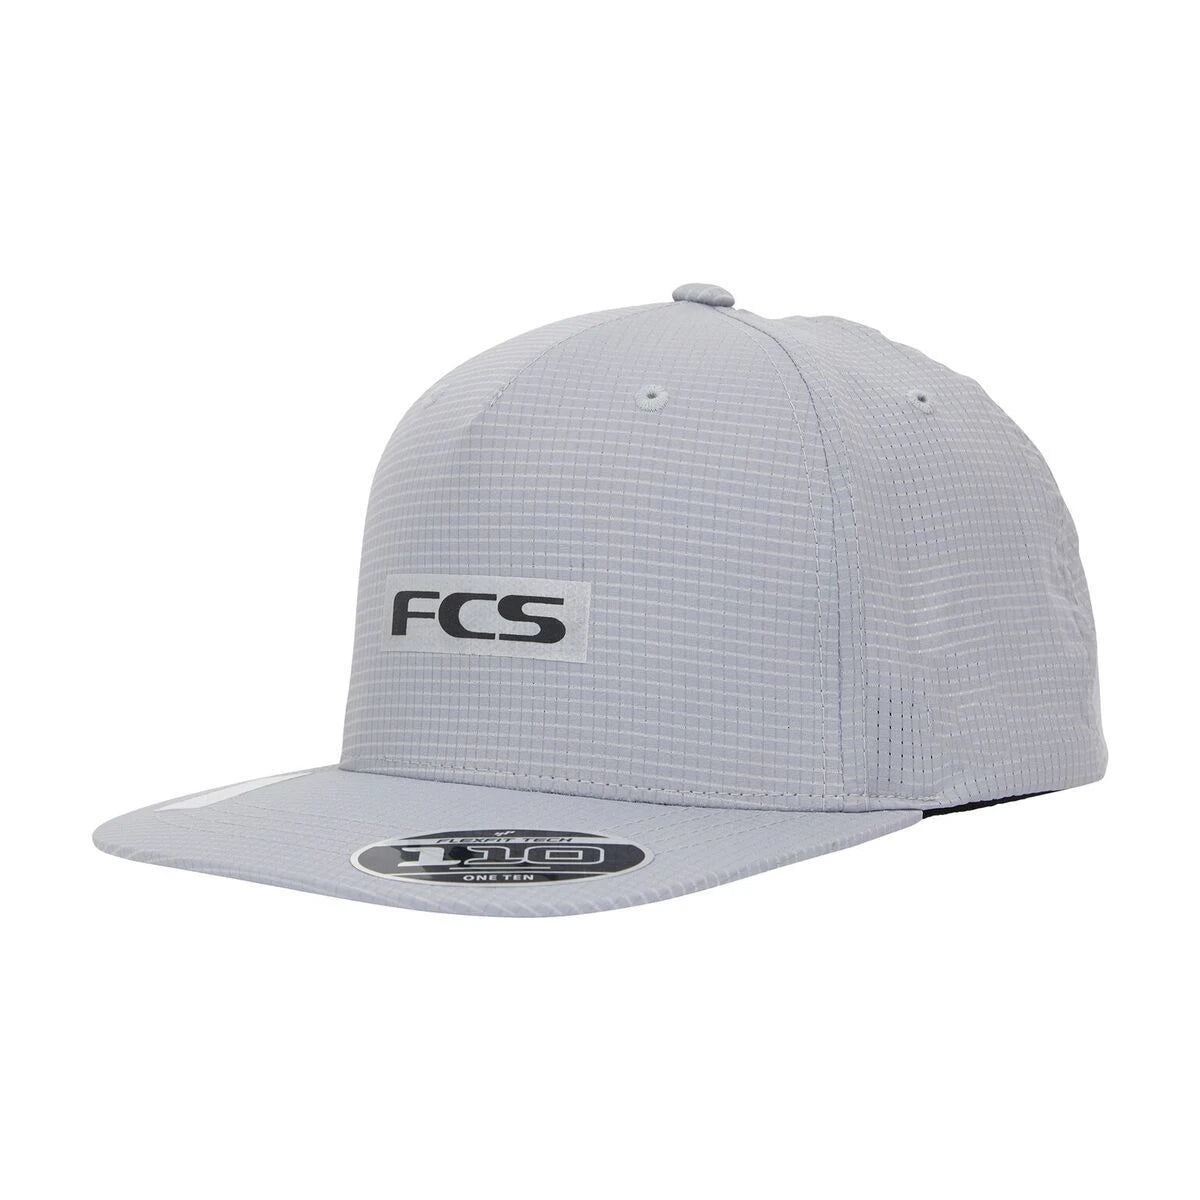 FCS Repel Snapback Cap - Grey